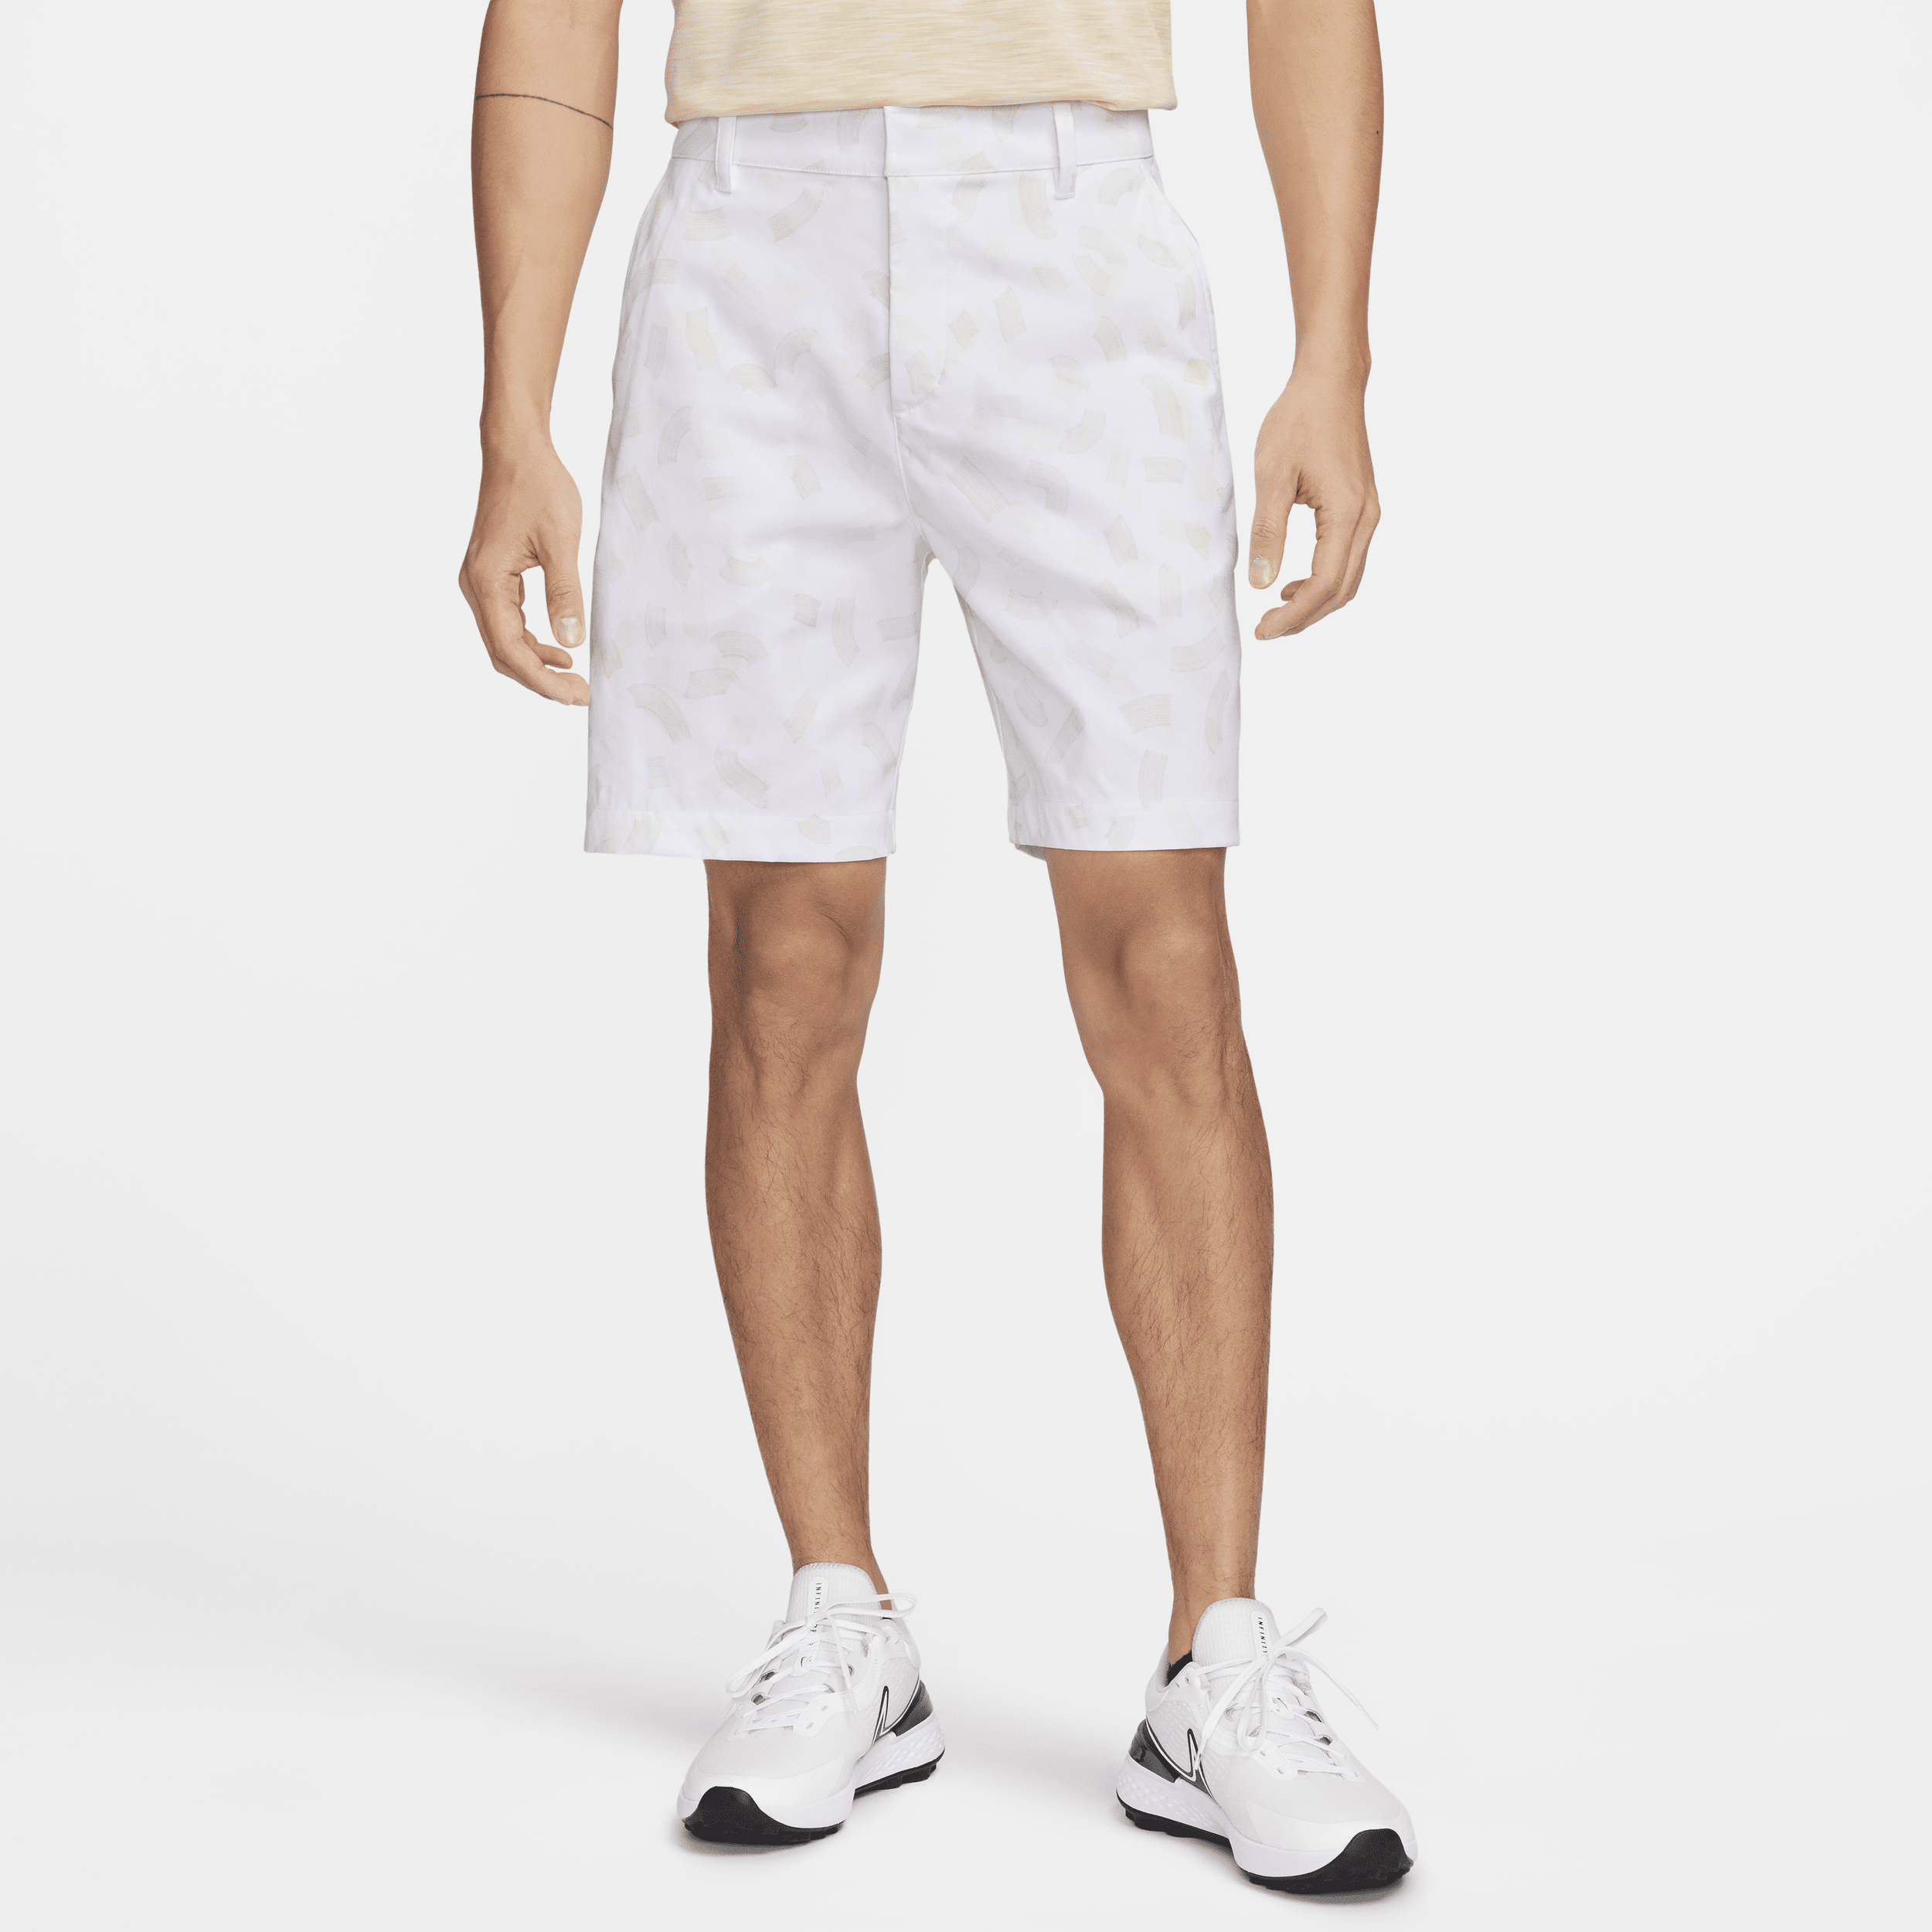 Nike Tour-chino-golfshorts (20 cm) til mænd - hvid